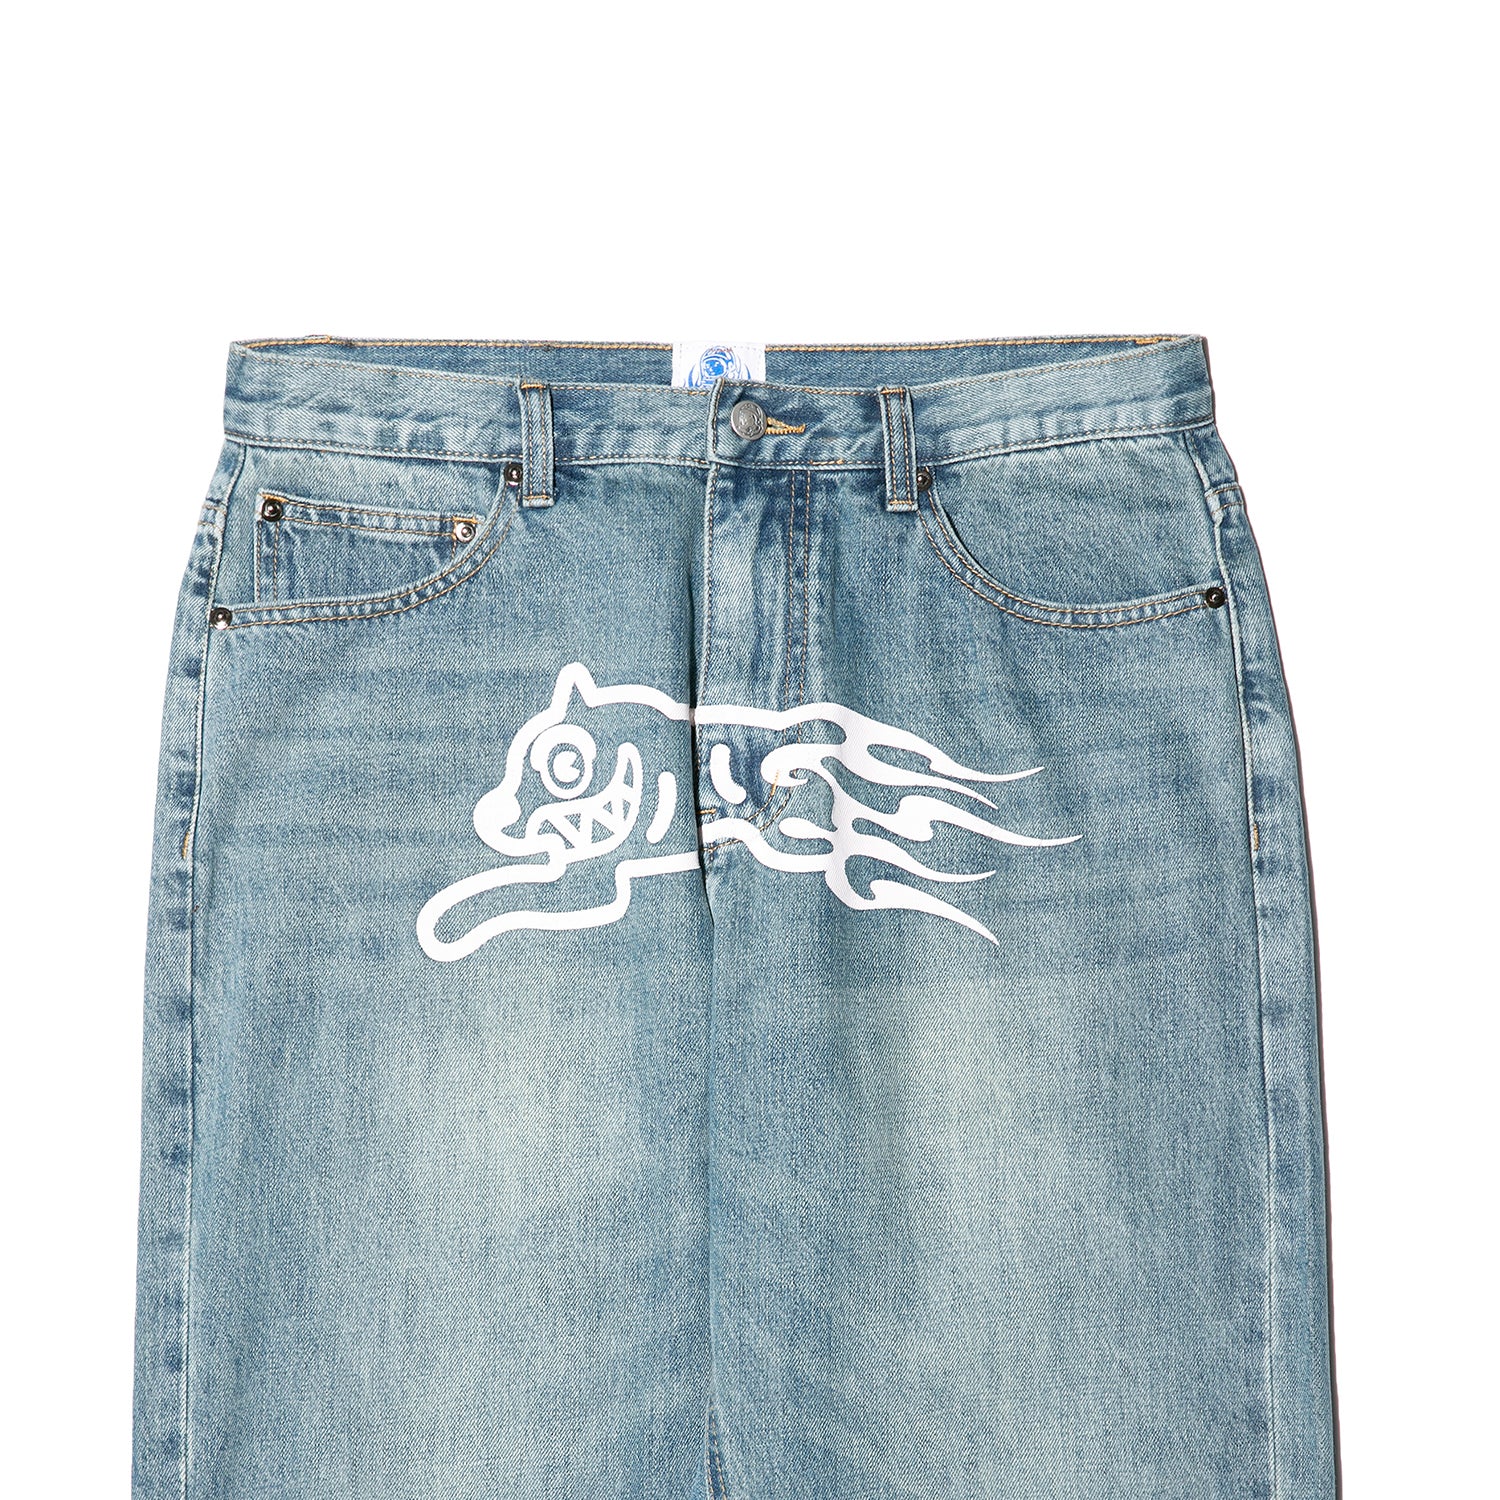 Blaze Dog Jeans-Washed Denim